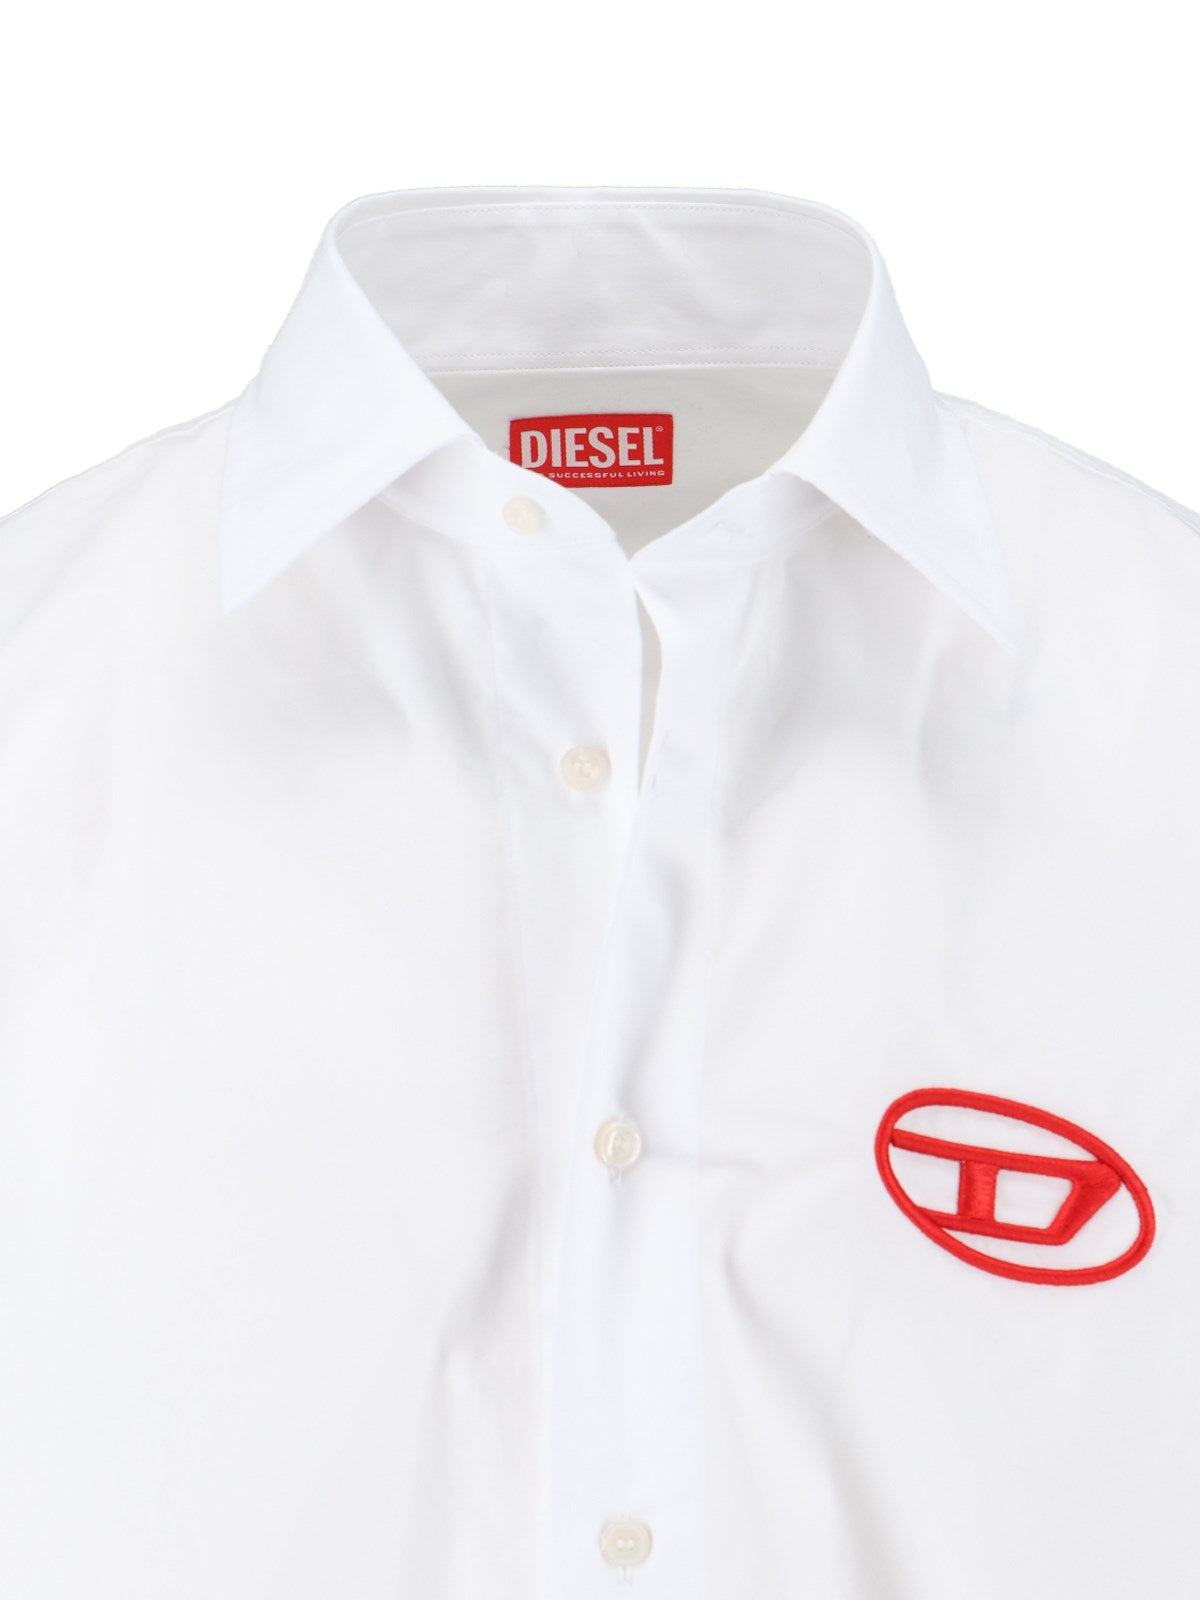 Diesel Camicia logo "oval-d"-camicie-Diesel-Camicia logo "oval-d" Diesel, in cotone bianco, colletto classico, chiusura bottoni, ricamo logo petto, bottoni polsini, orlo dritto.-Dresso